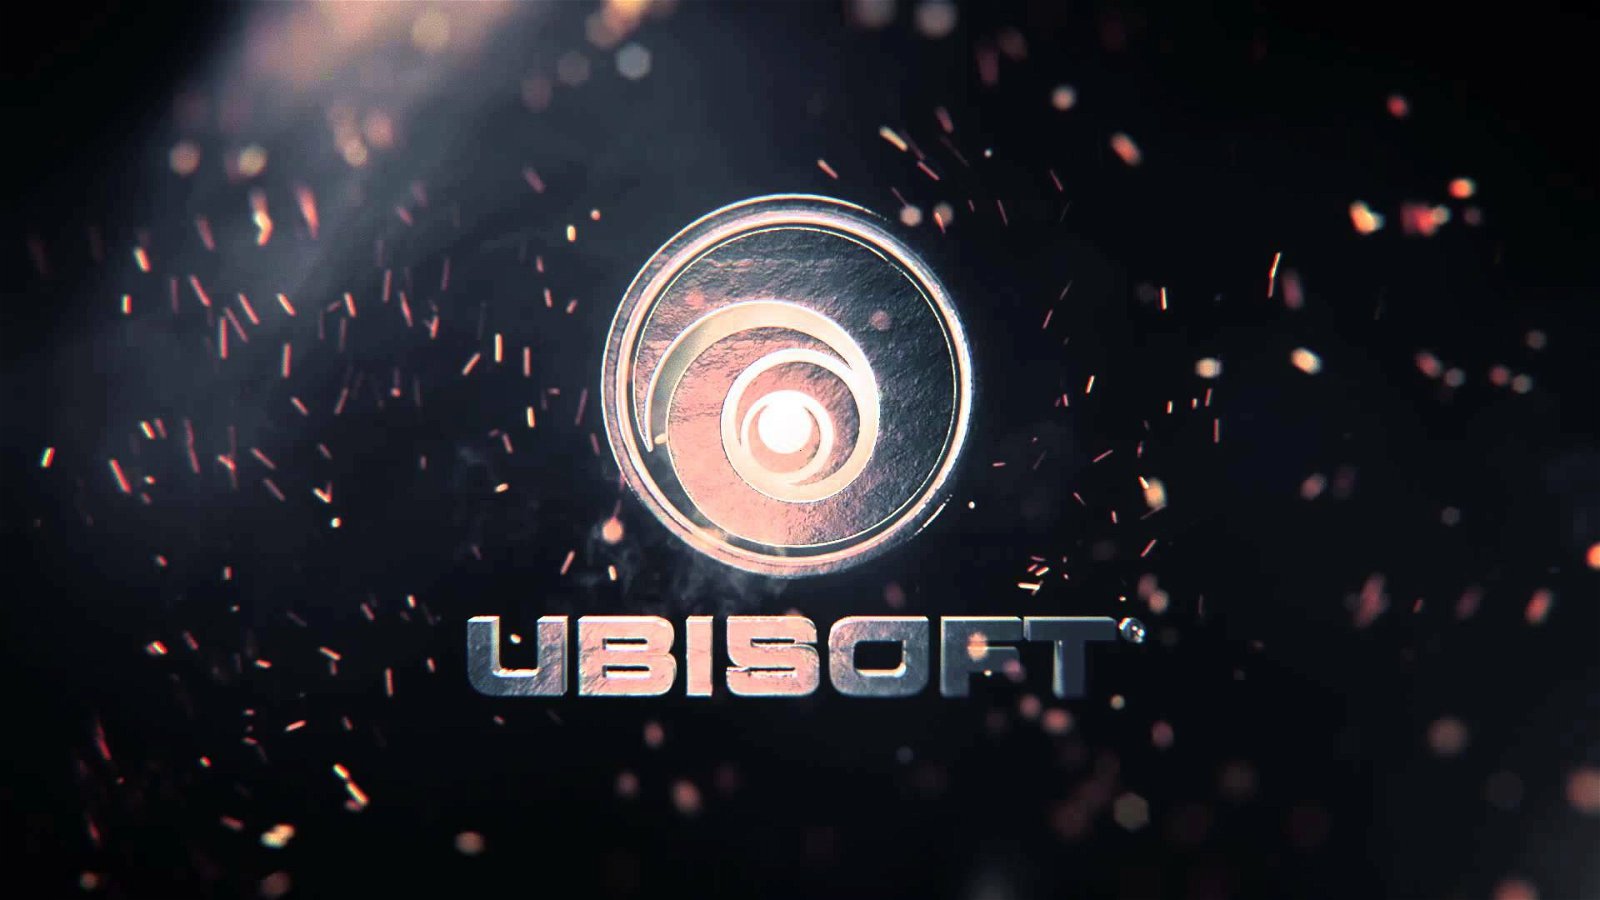 Ubisoft vi fa provare gratis una novità in anteprima (ma solo per 24 ore)